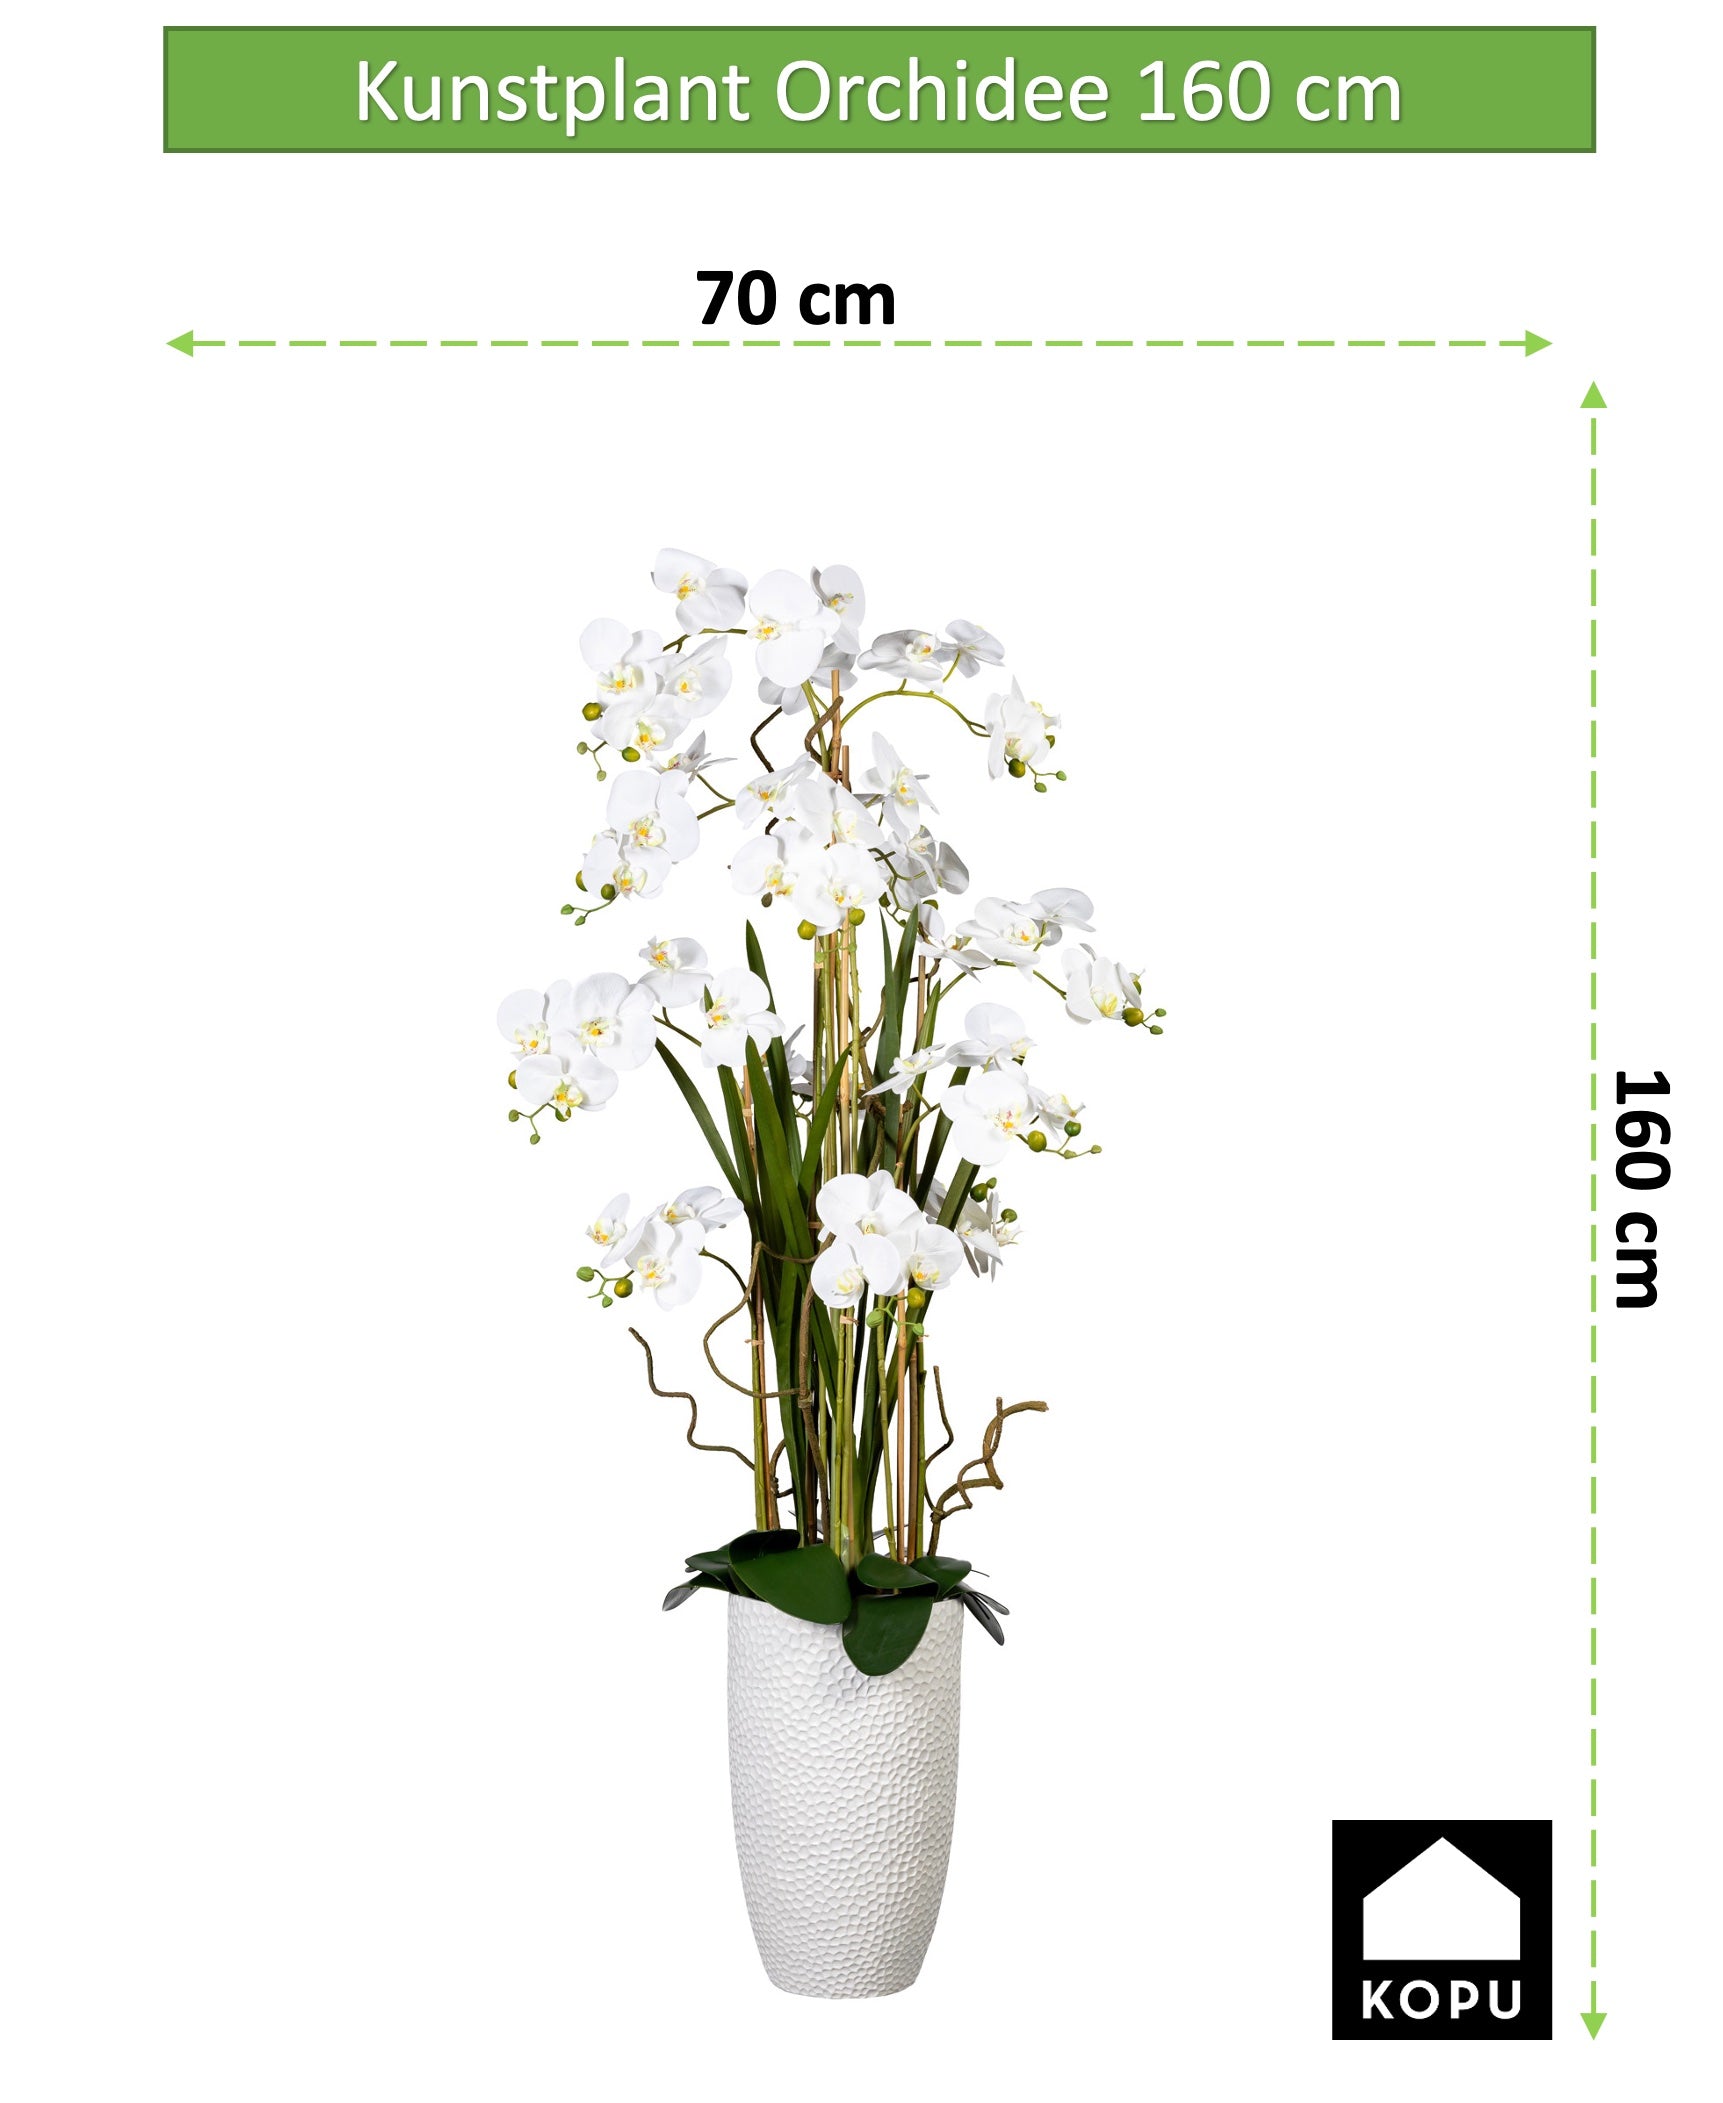 Kopu® Kunstplant Orchidee 160 cm Wit in Hoge Bloempot - Phalaenopsis